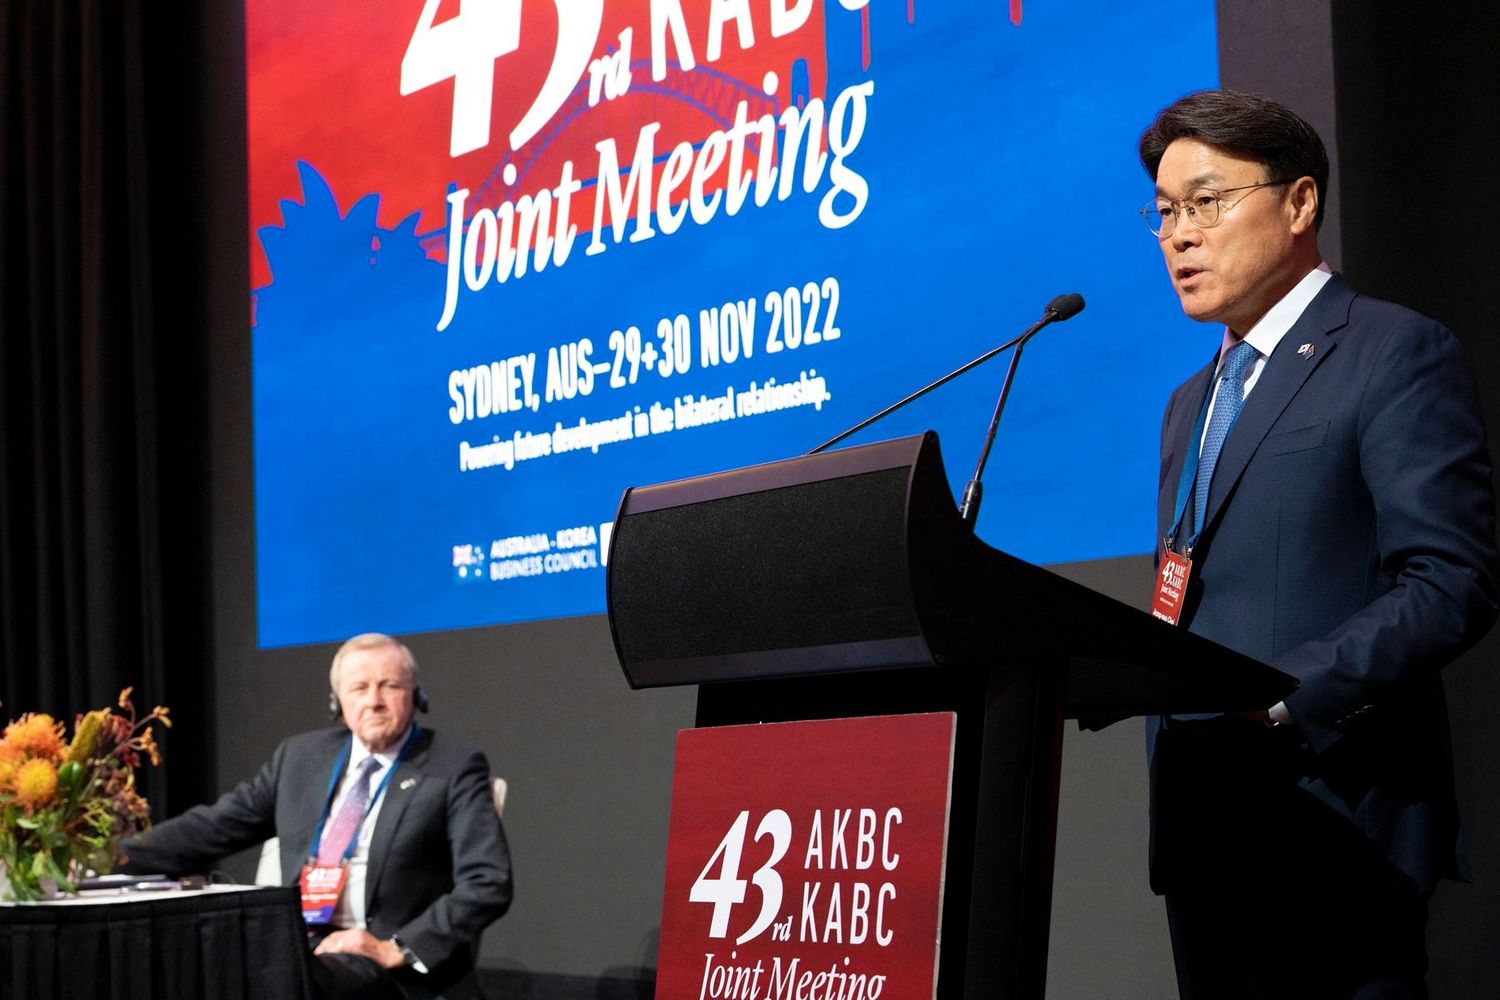 최정우 포스코그룹 회장(사진 오른쪽)이 지난달 30일 시드니에서 개최된 제43차 한국-호주 경제협력위원회에 한국측 위원장으로 참석해 개막식 기념사를 하고 있다.